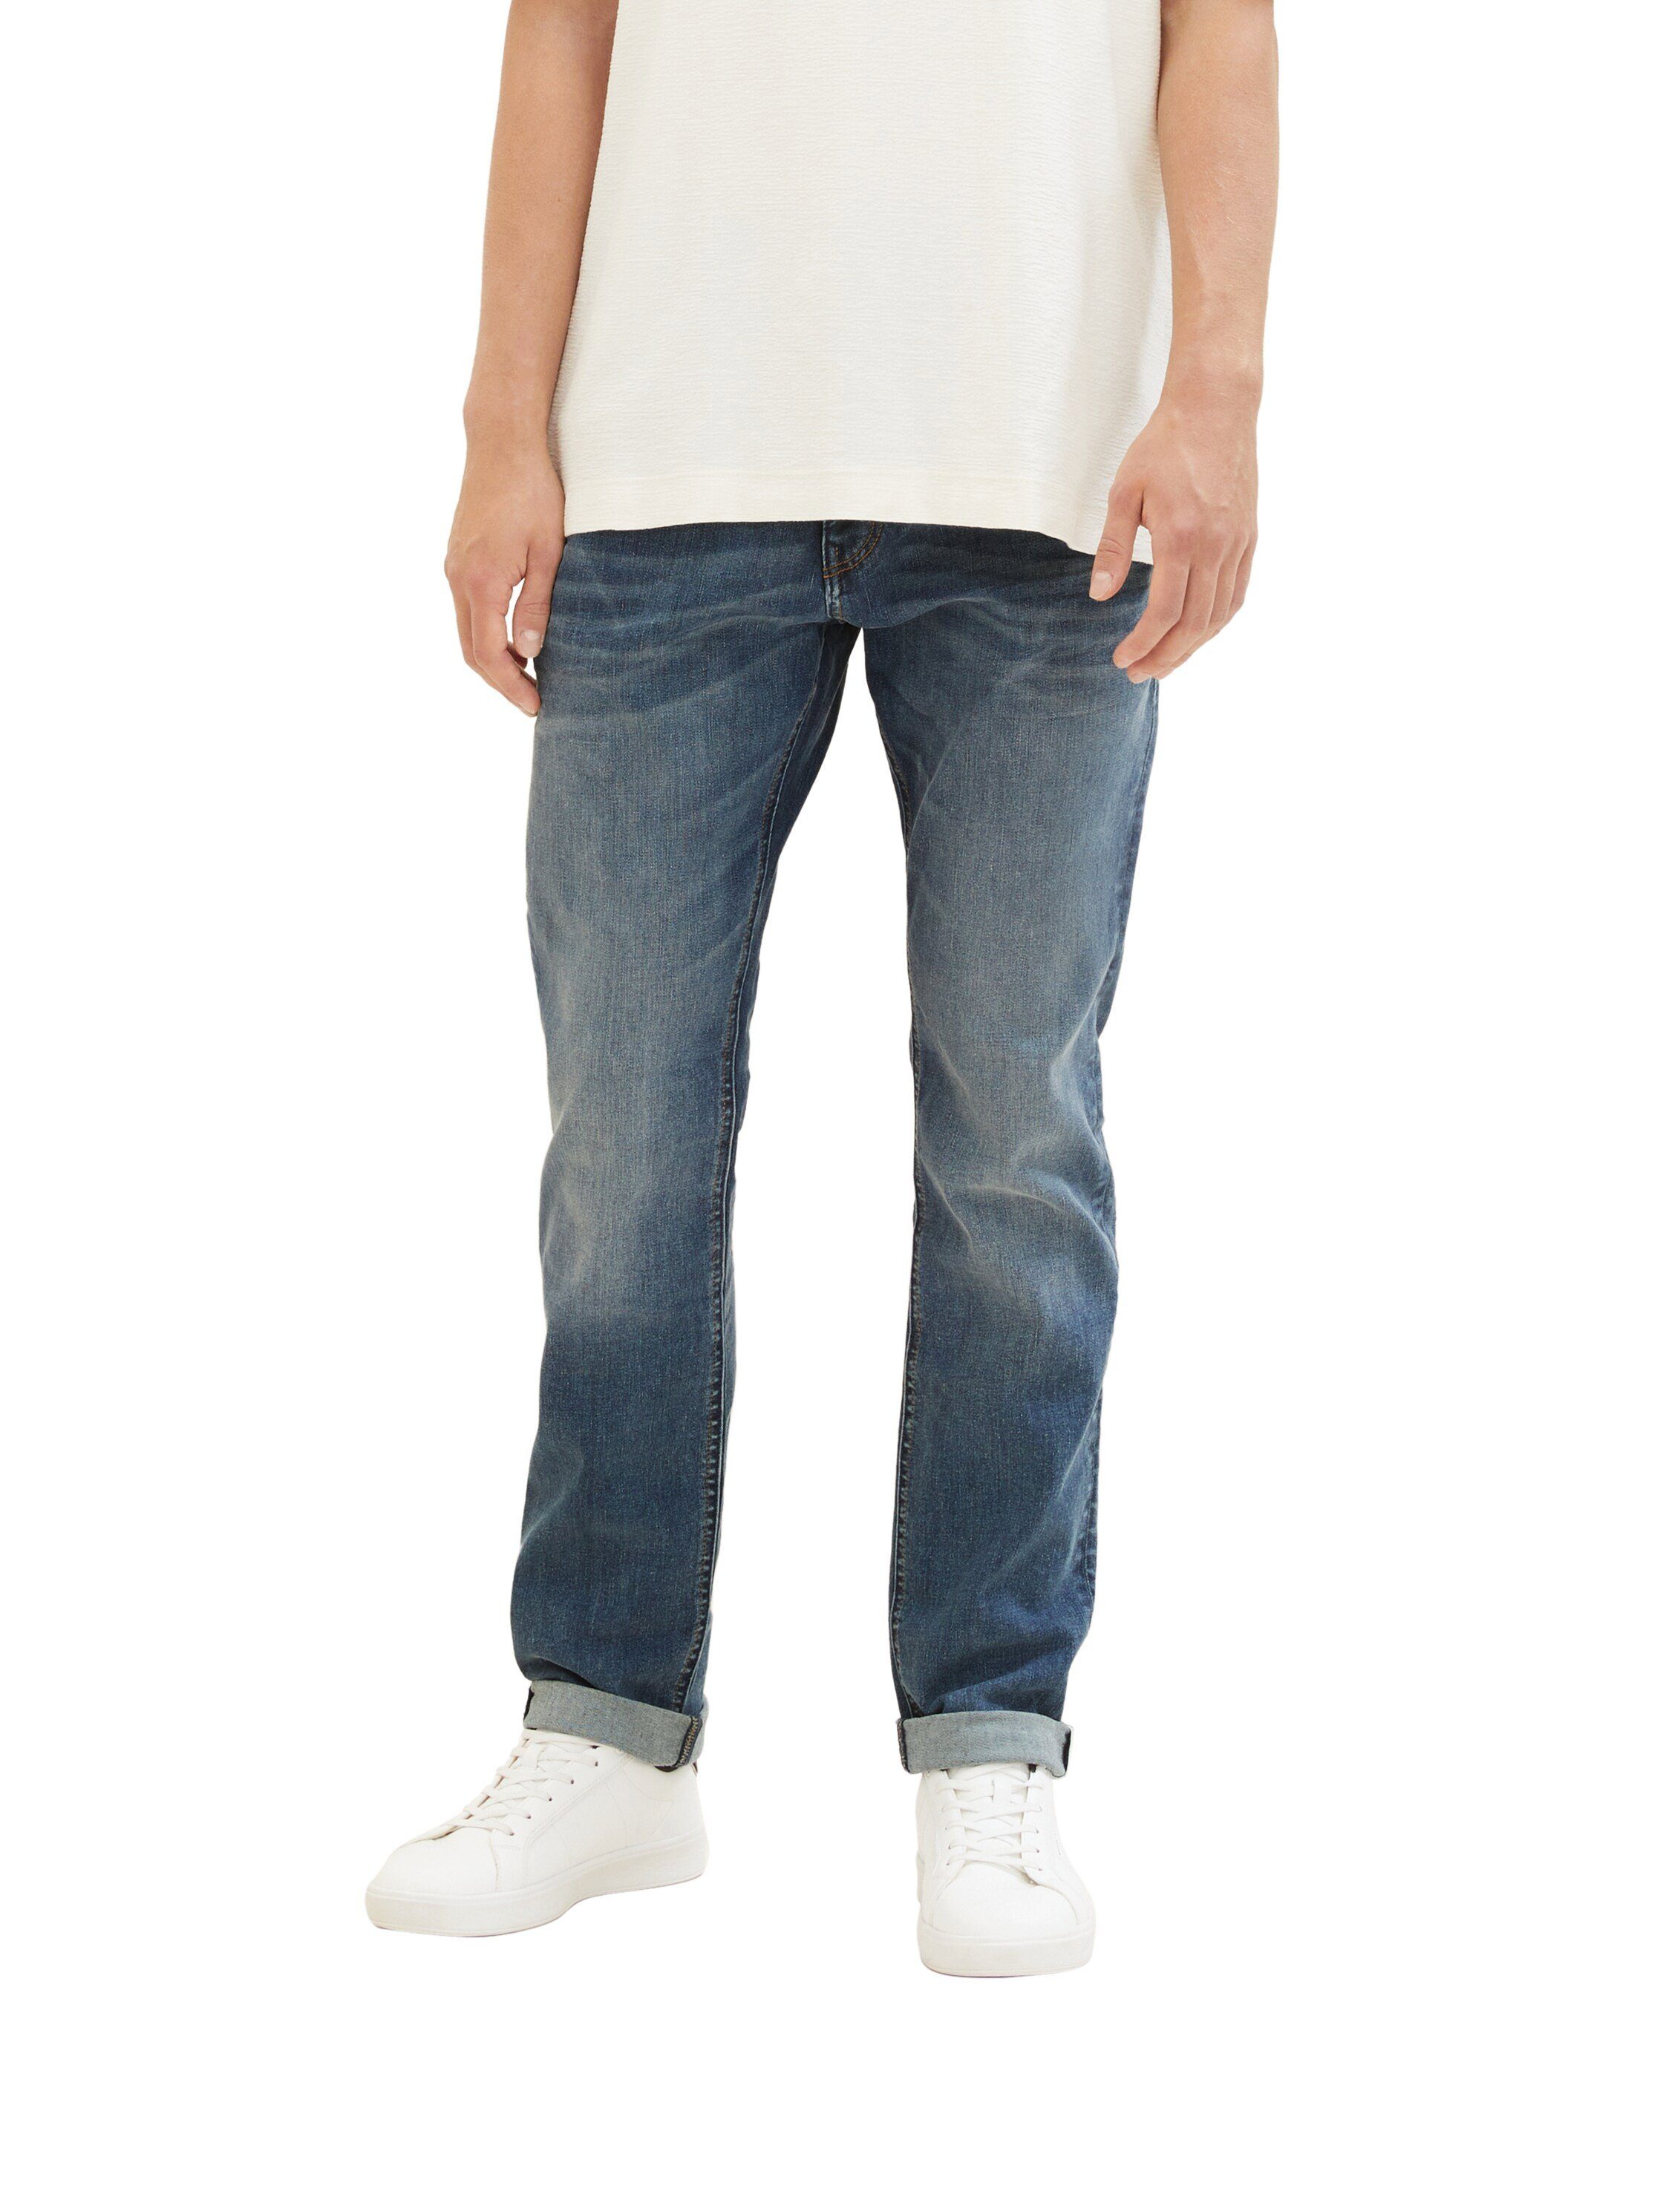 TOM TAILOR Denim 5-Pocket-Jeans AEDAN Straight mit Kontrastnähten und Stretch-Anteil